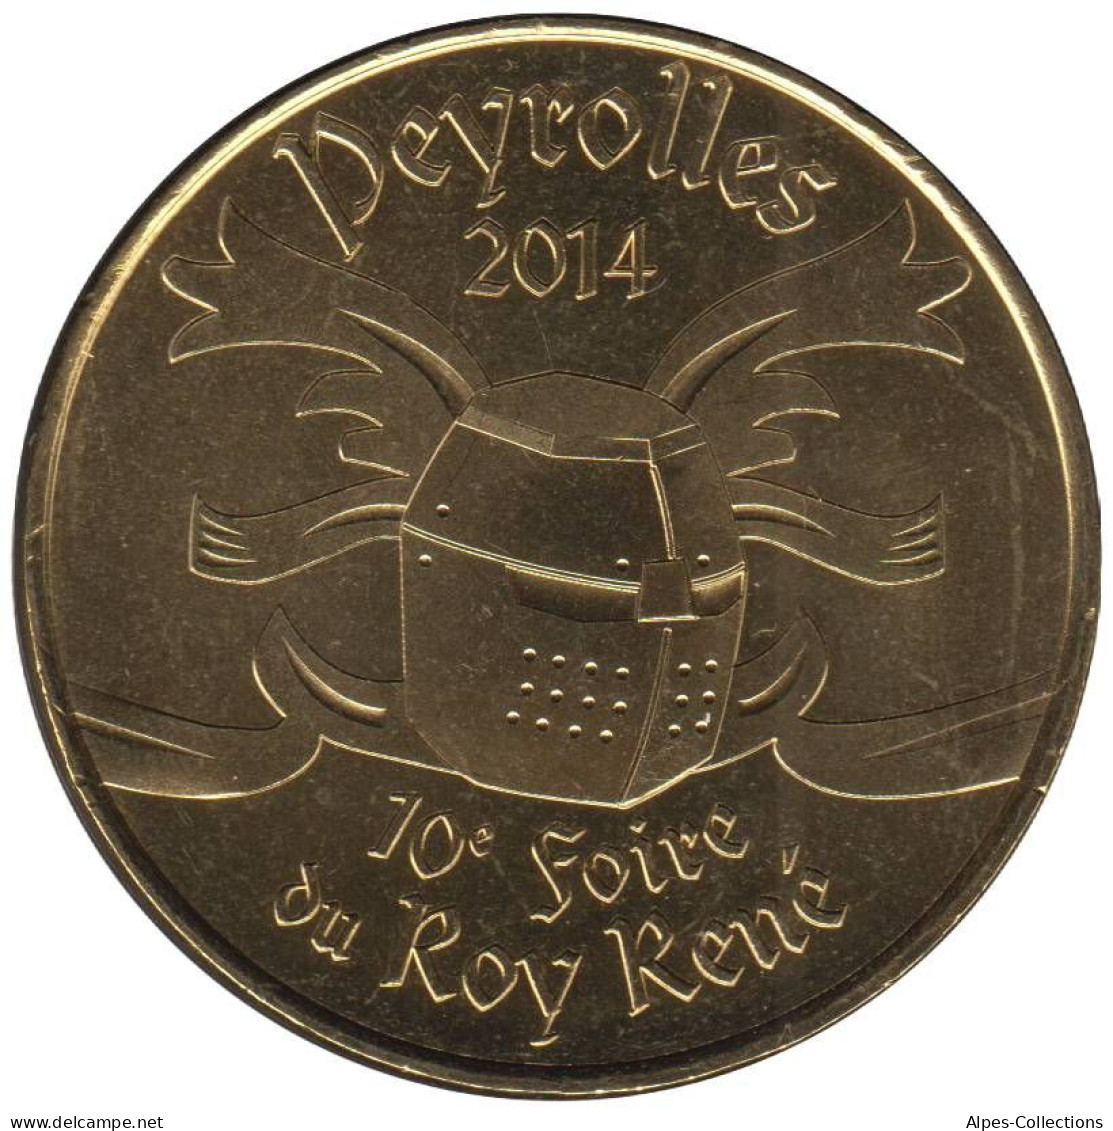 13-1825 - JETON TOURISTIQUE MDP - Peyrolles 2014 10e Foire Du Roy René - 2014.1 - 2014